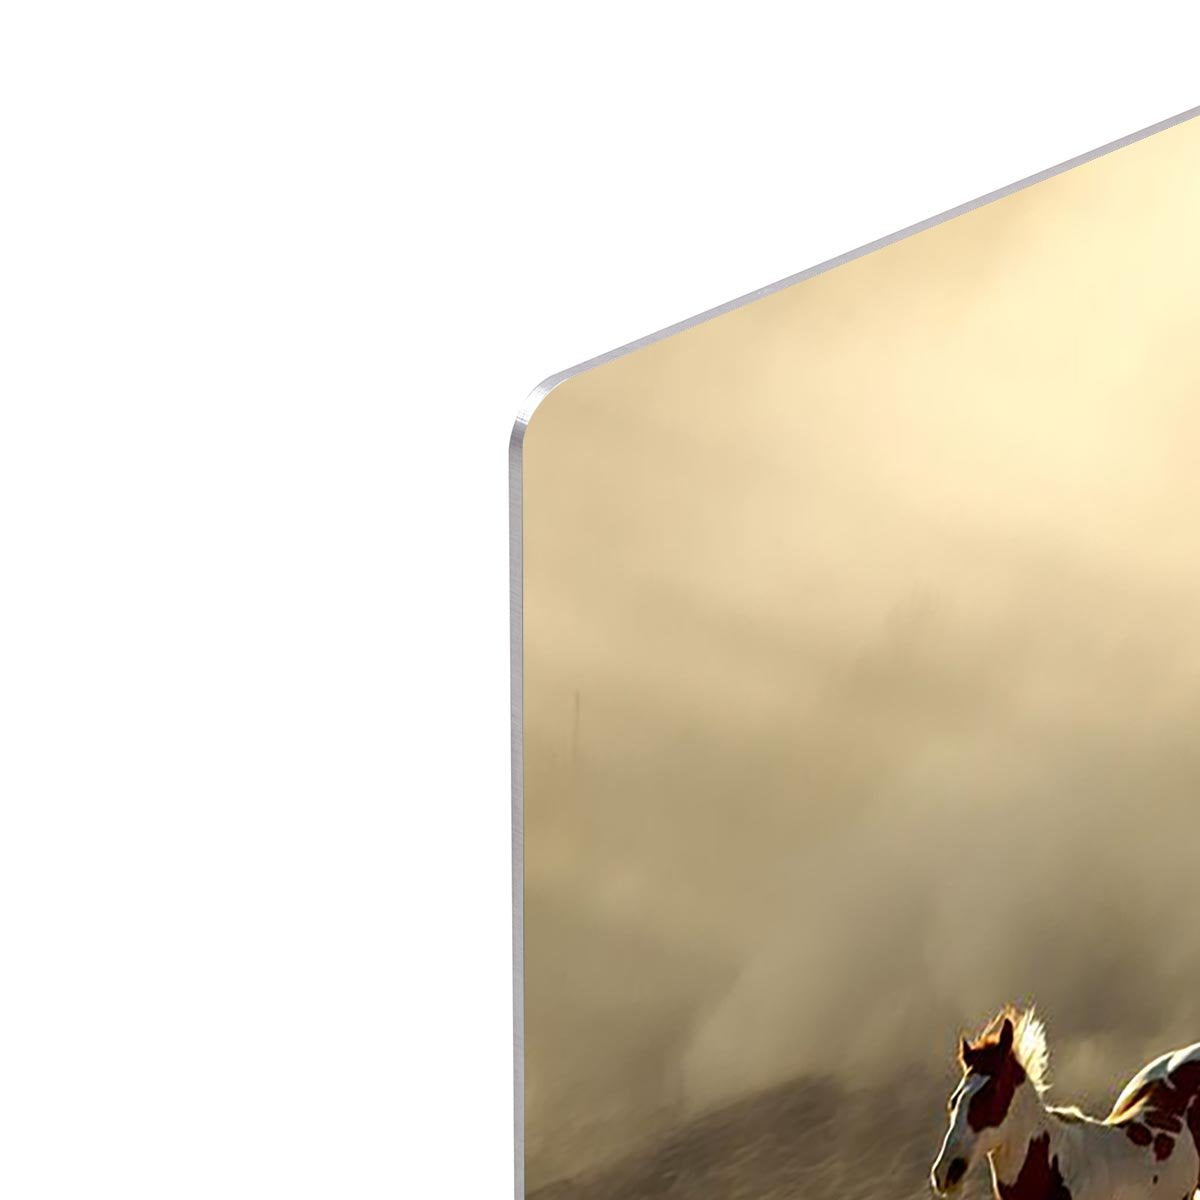 Sunlight Horses and cowboy HD Metal Print - Canvas Art Rocks - 4